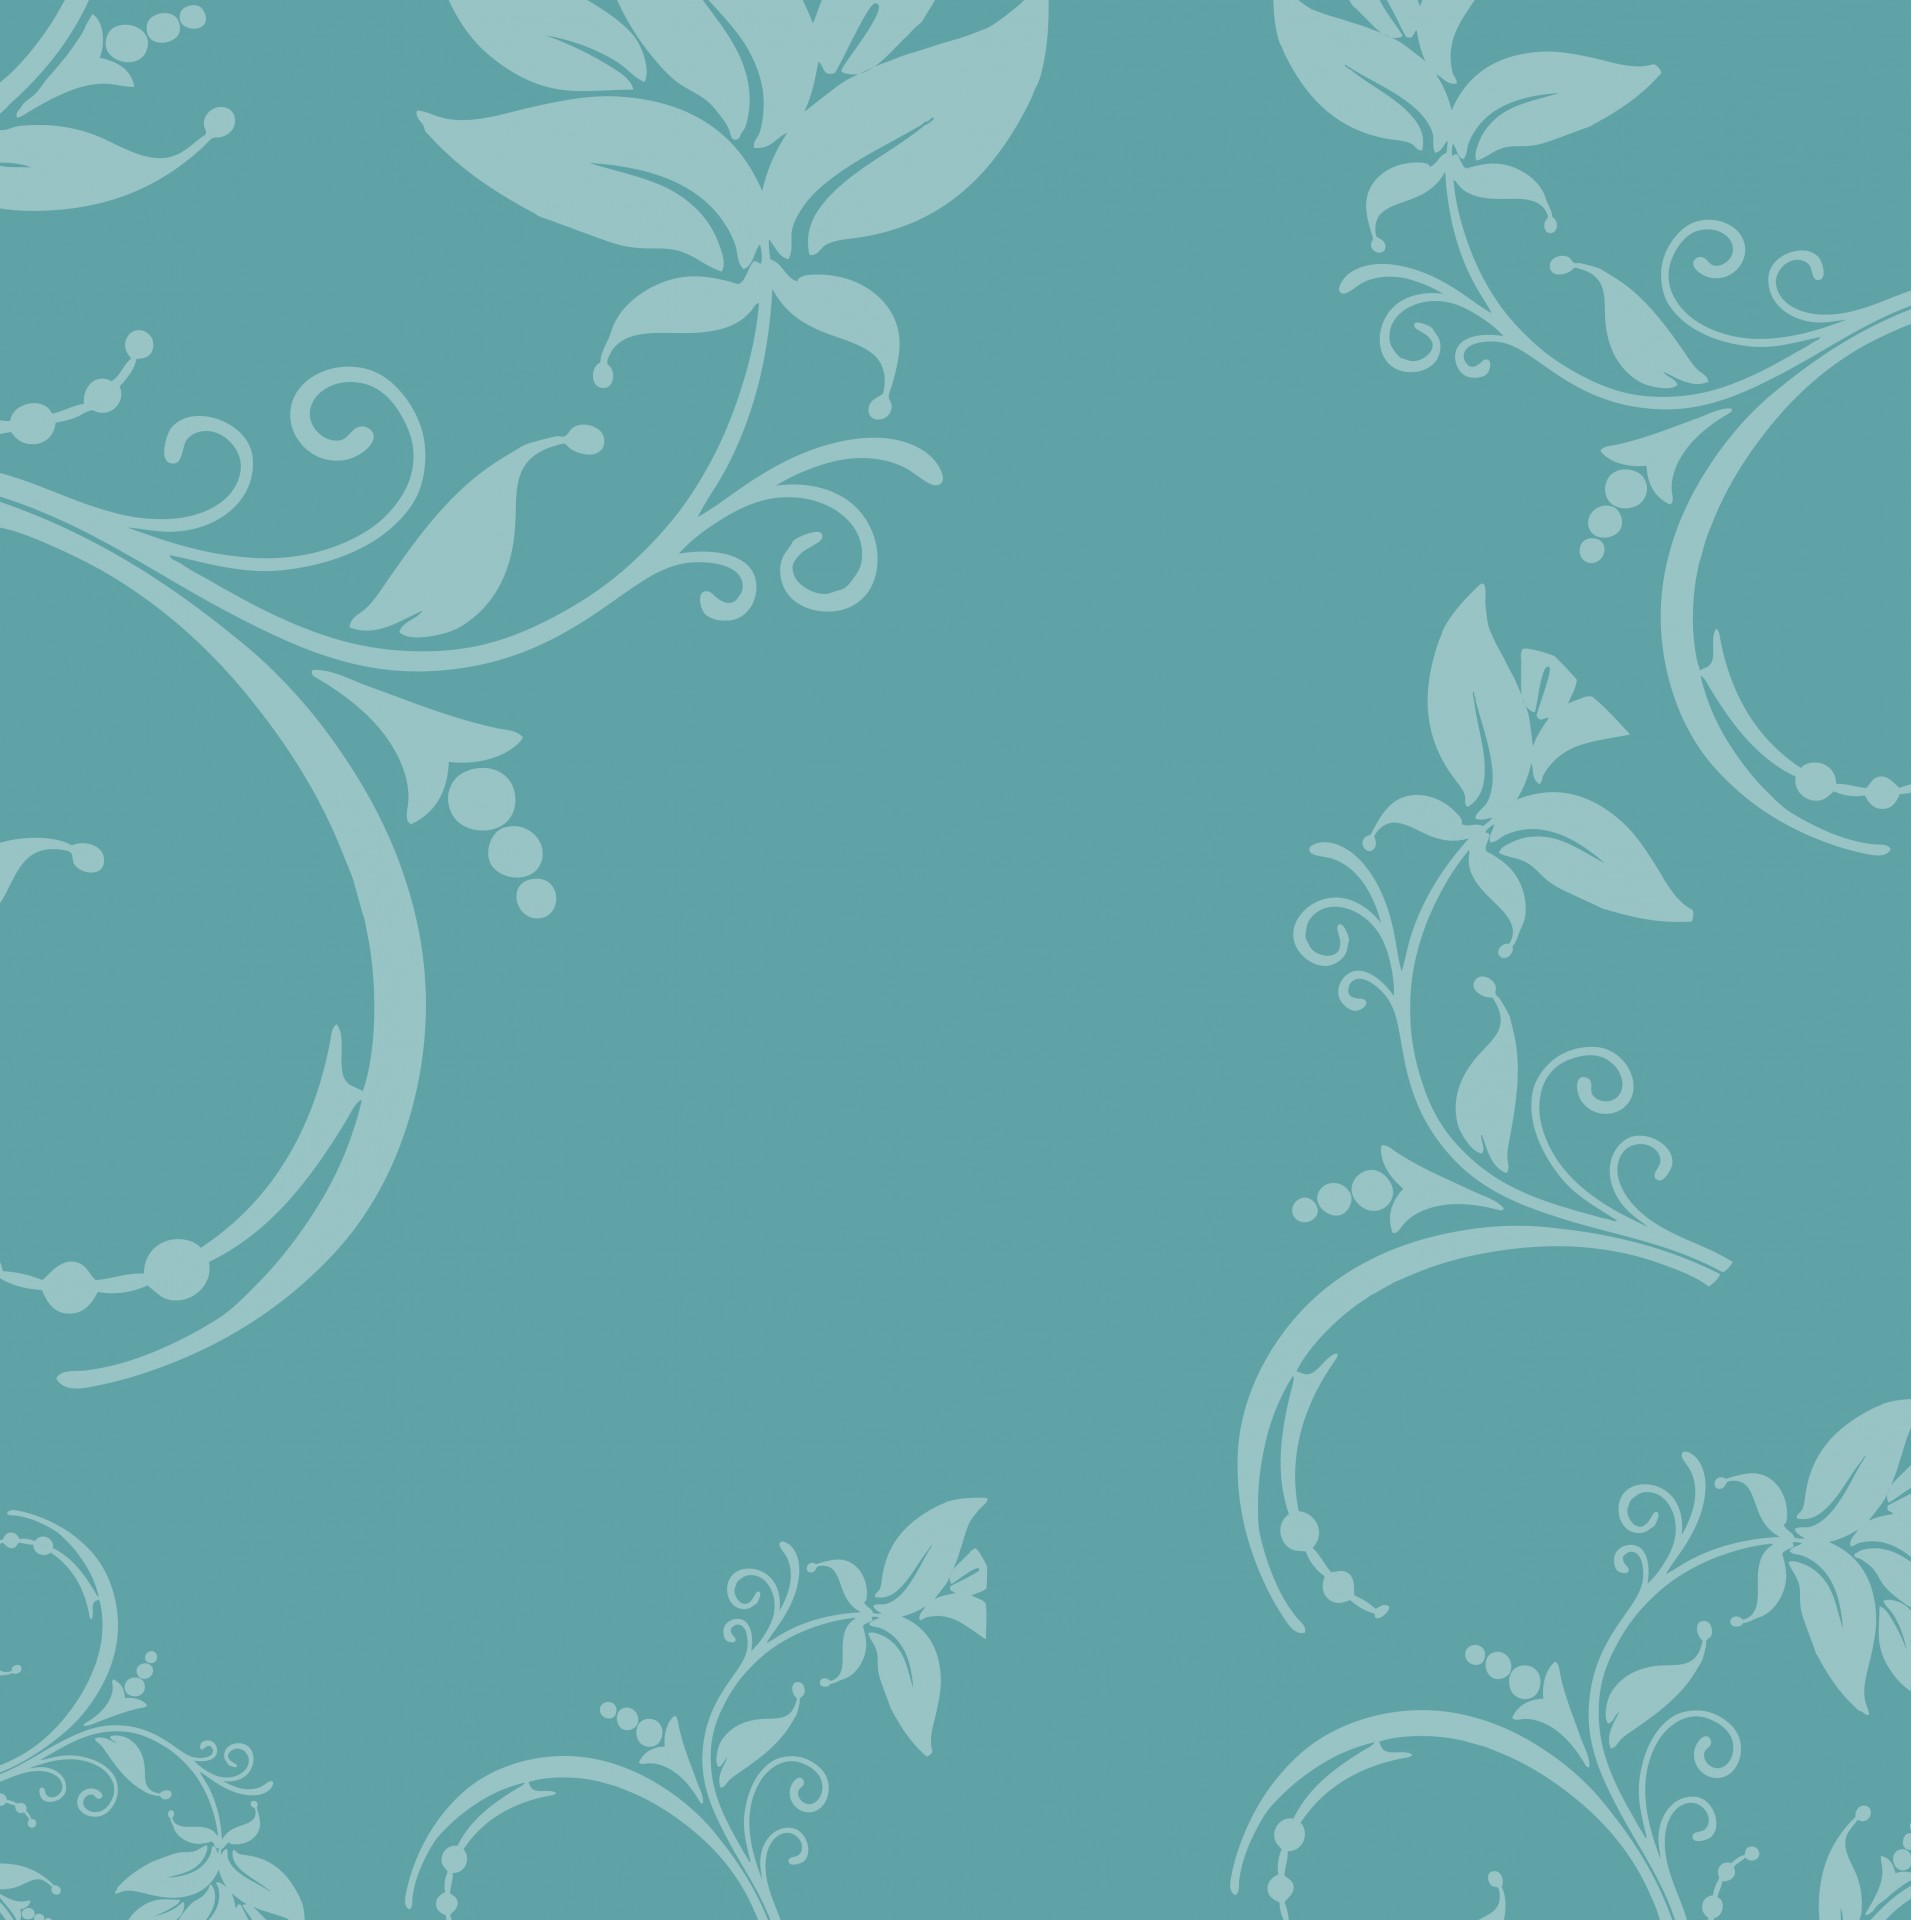 Floral Vintage Leaves Free Photo - Floral Background Design Pattern - HD Wallpaper 